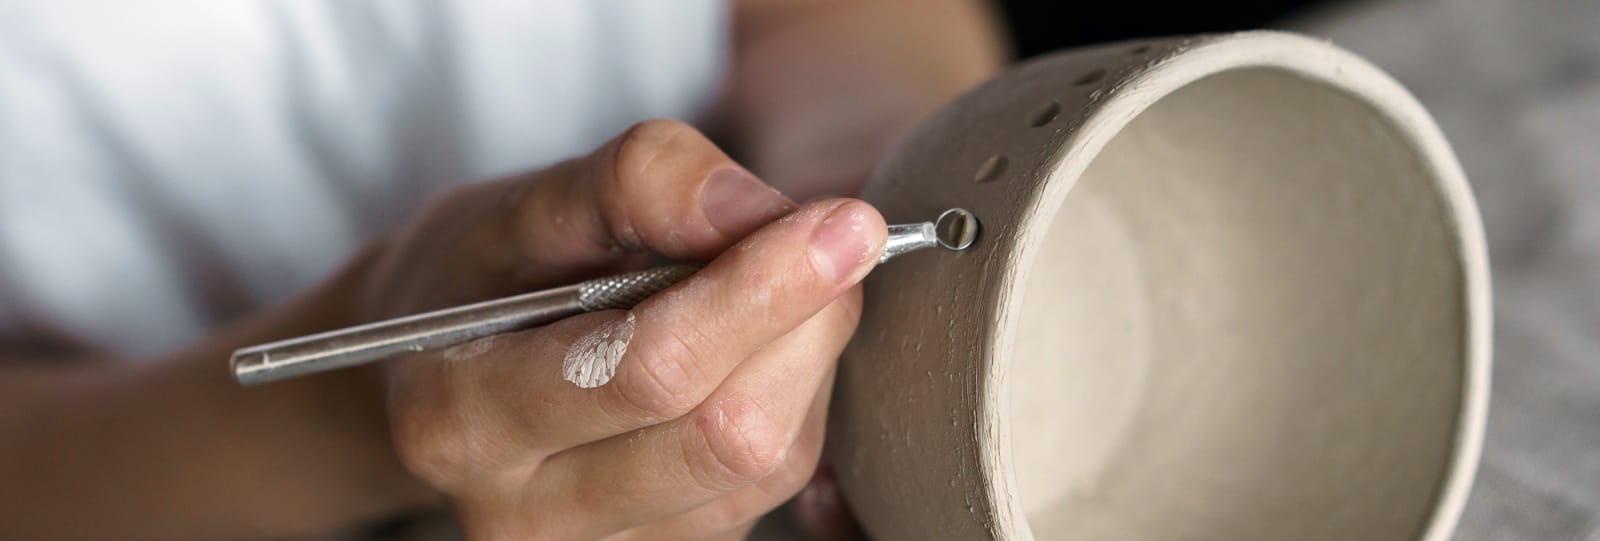 Les secrets créatifs de la céramique (visite et atelier)